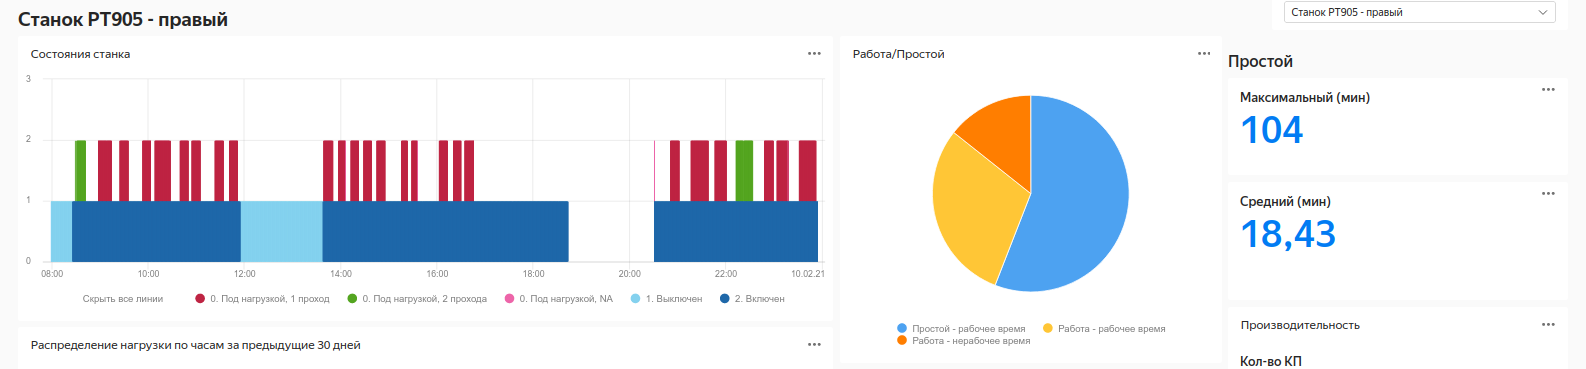 Аналитика для станков: IIoT с помощью сервисов Yandex.Cloud и оборудования Moxa